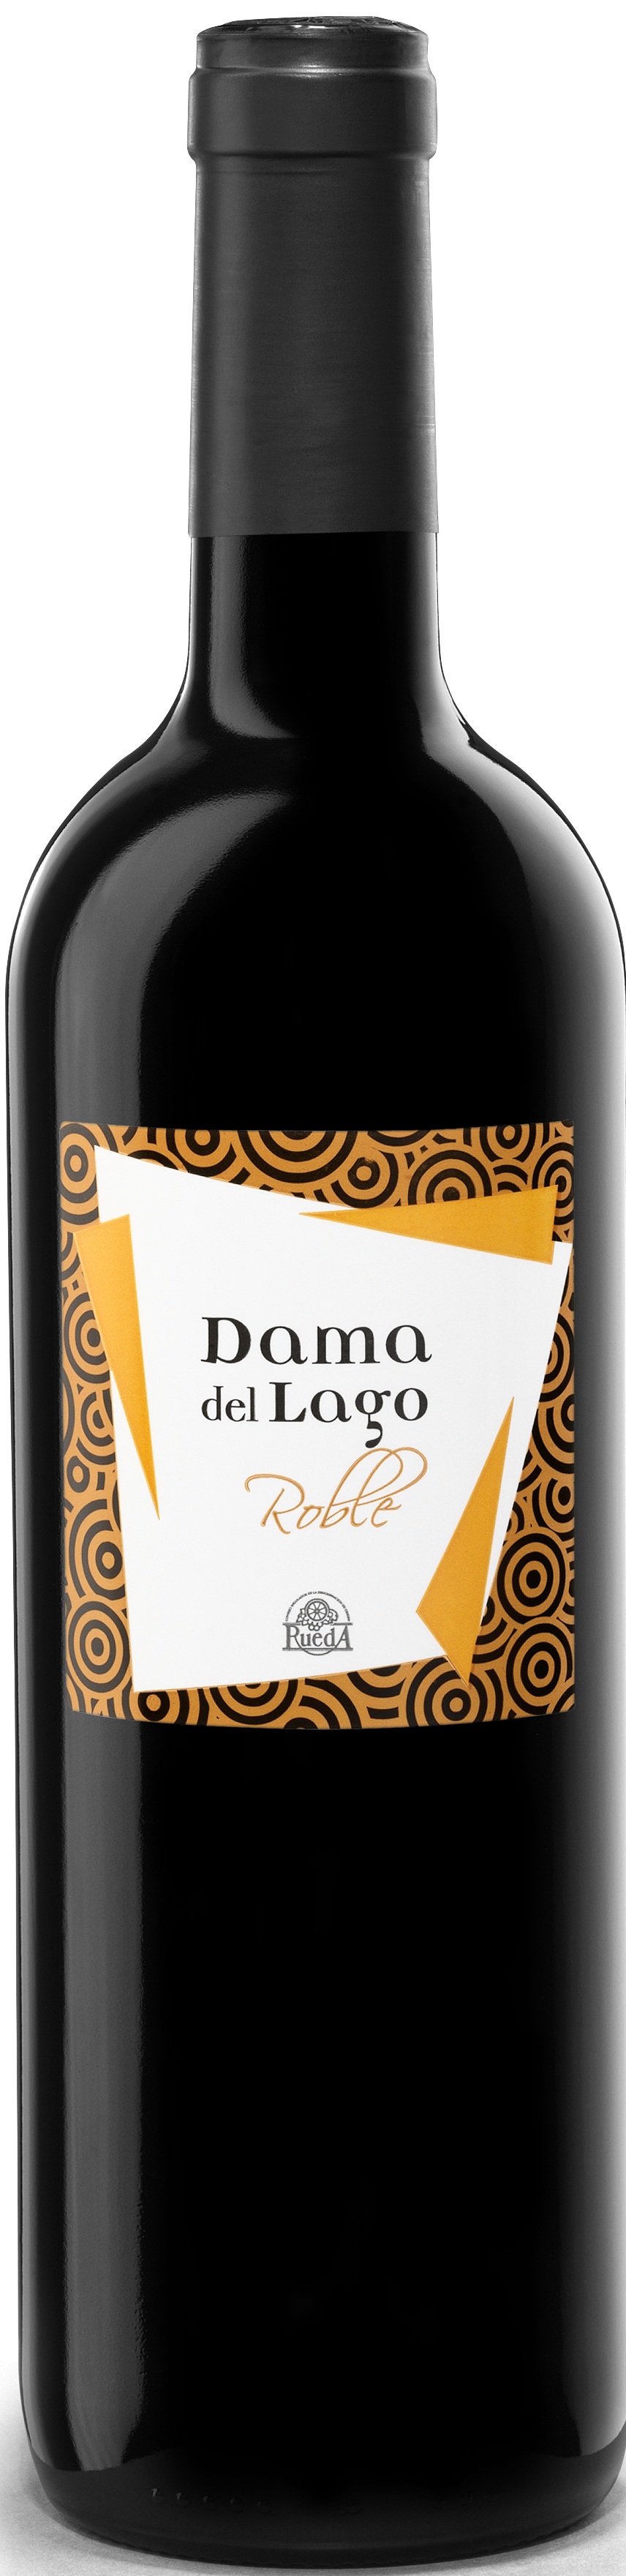 Bild von der Weinflasche Dama del Lago Roble